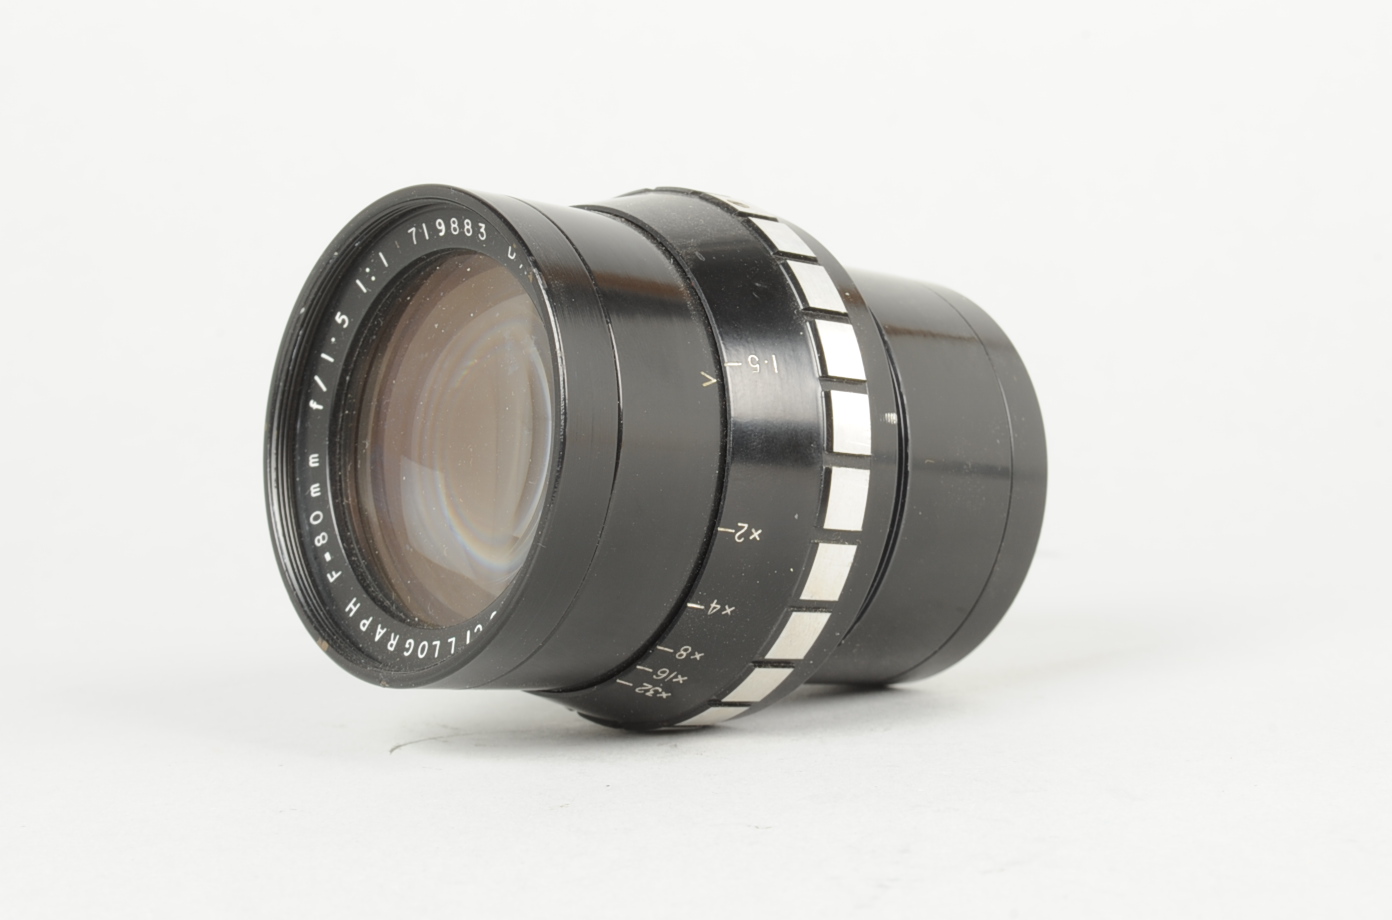 A Dallmeyer Octac Oscillograph 80mm f/1.5 Lens, serial no 719883, barrel G-VG, elements G, tiny nick